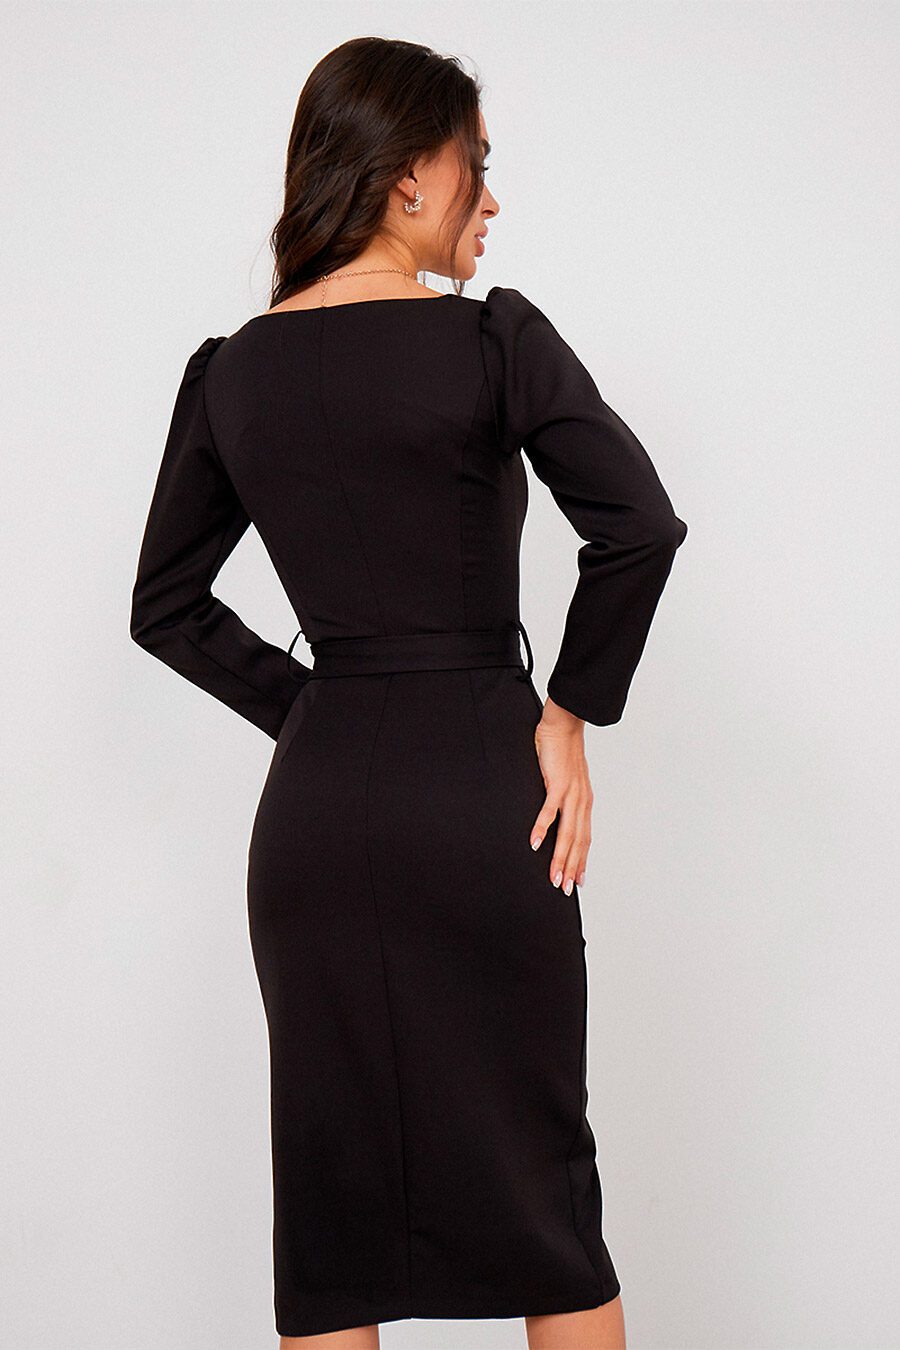 Платье для женщин VITTORIA VICCI 740276 купить оптом от производителя. Совместная покупка женской одежды в OptMoyo